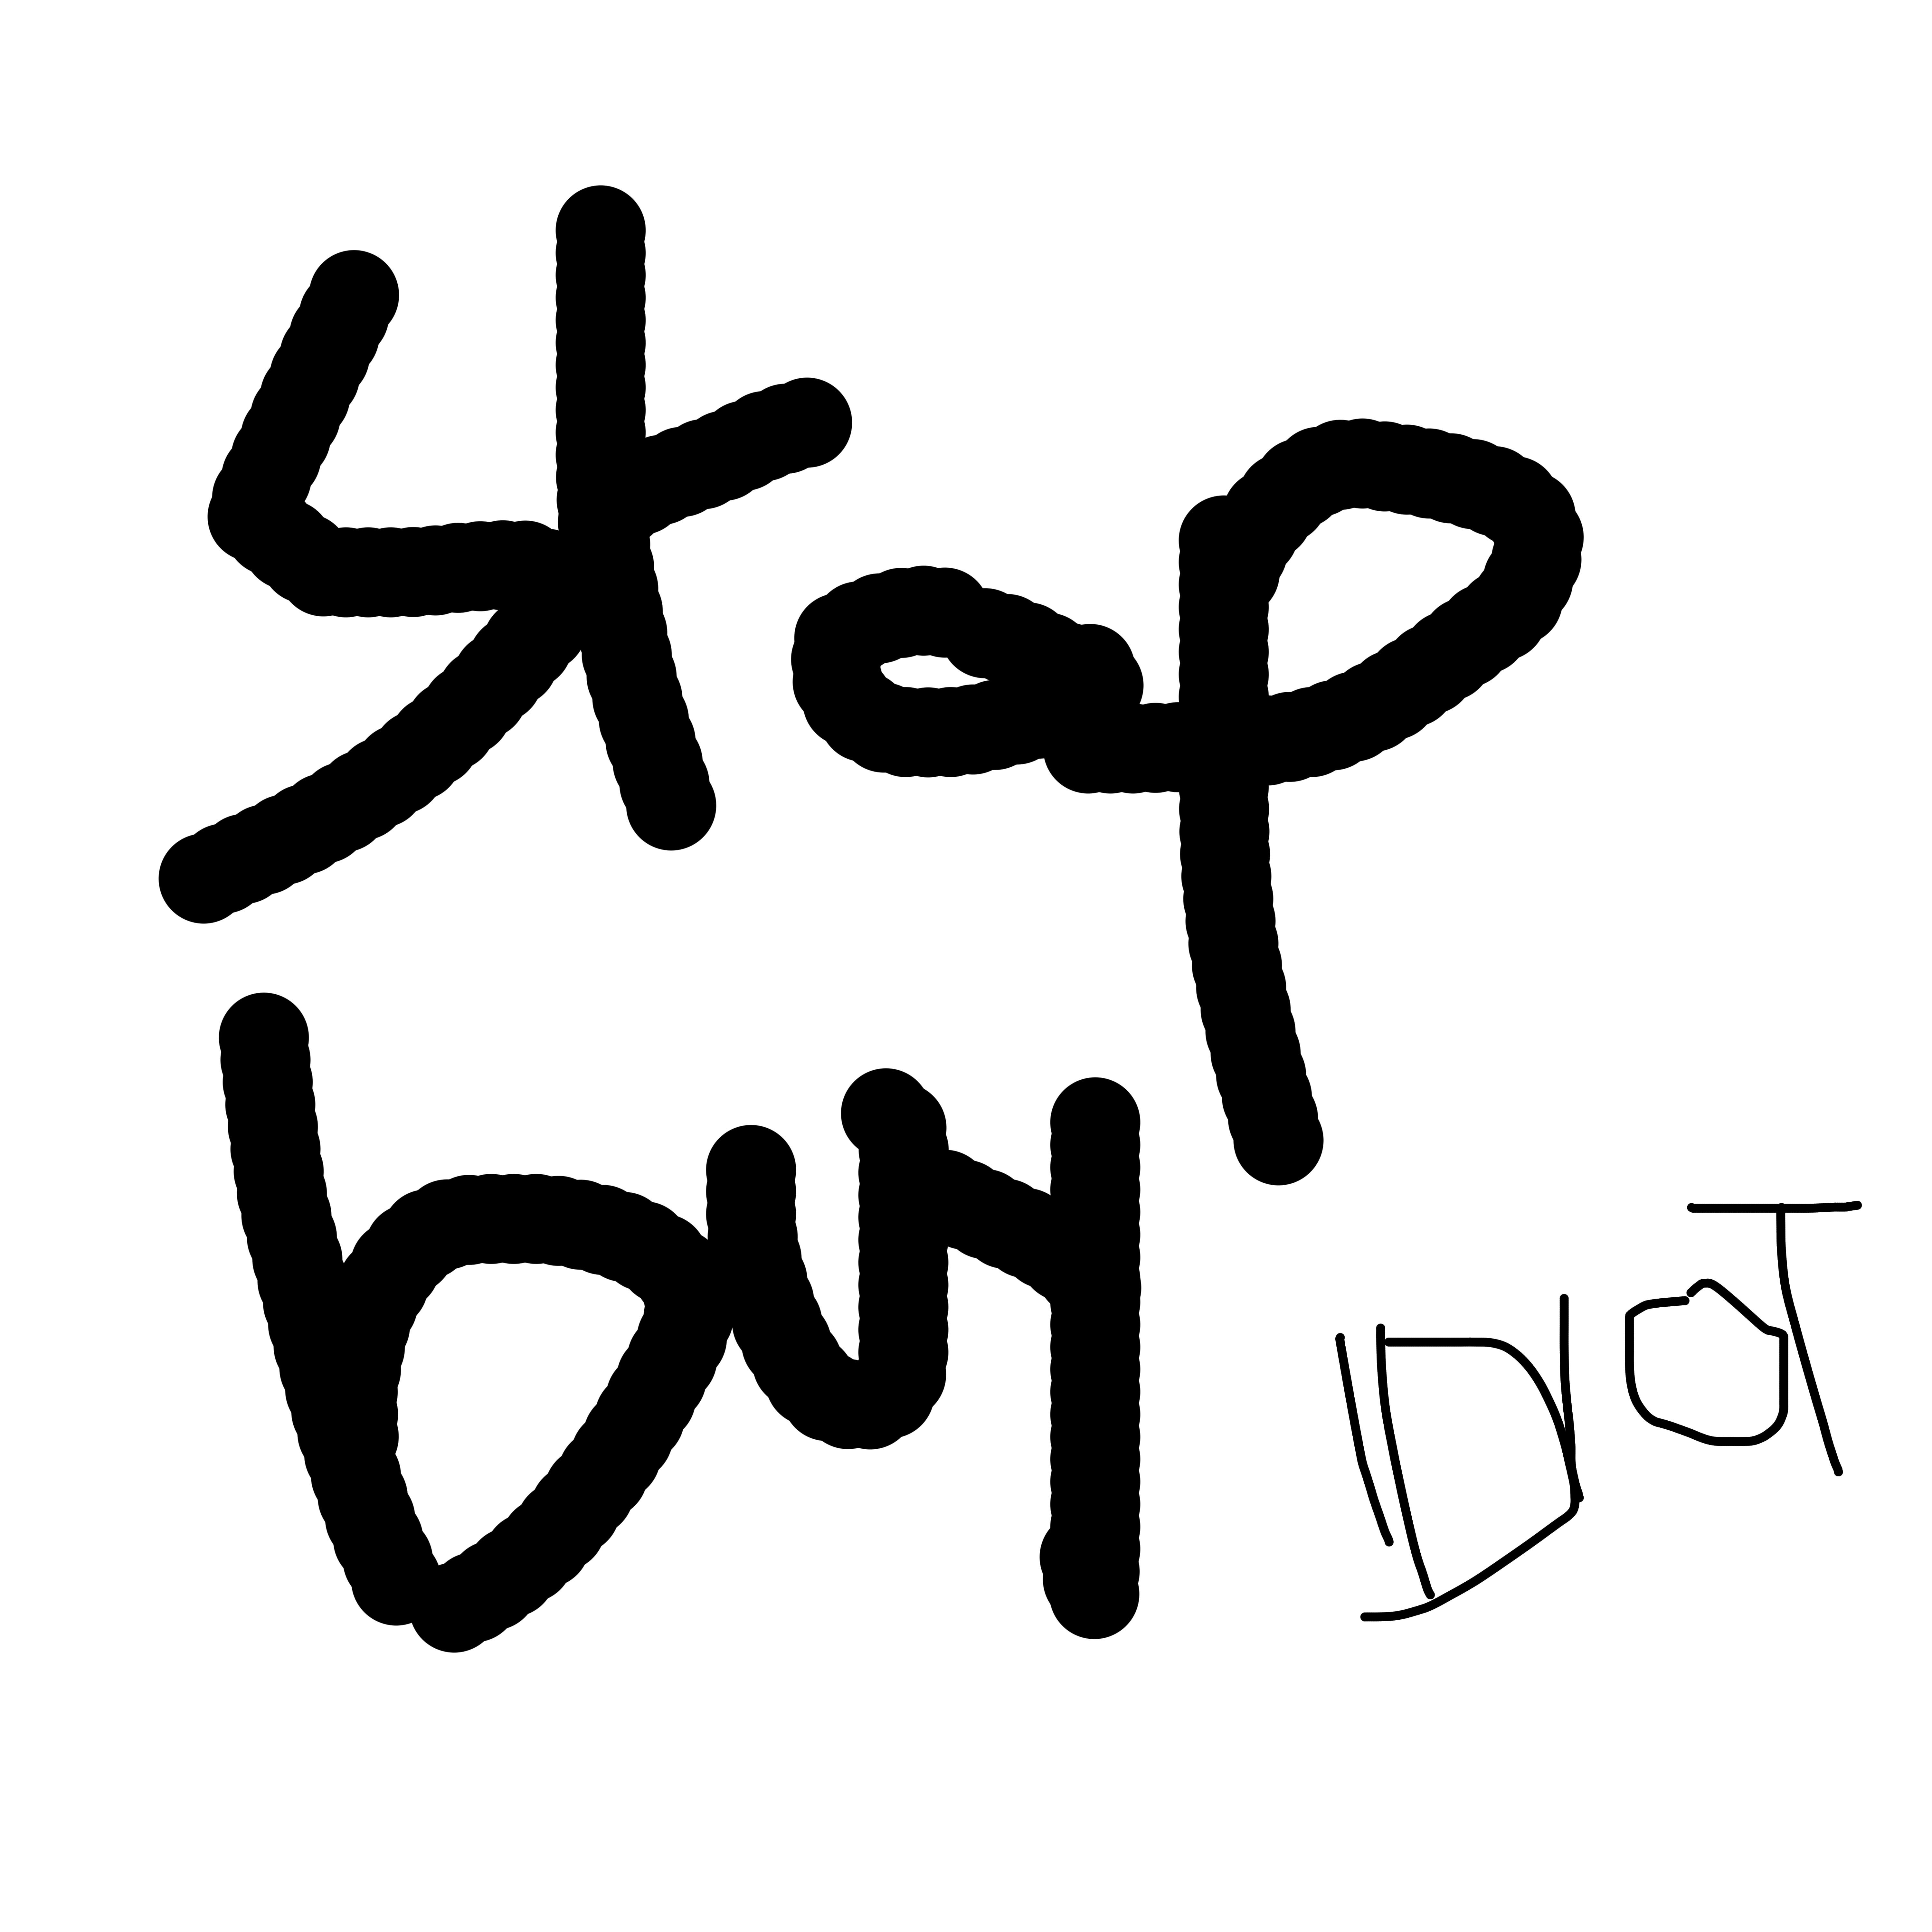 STOP BUY IDIOT